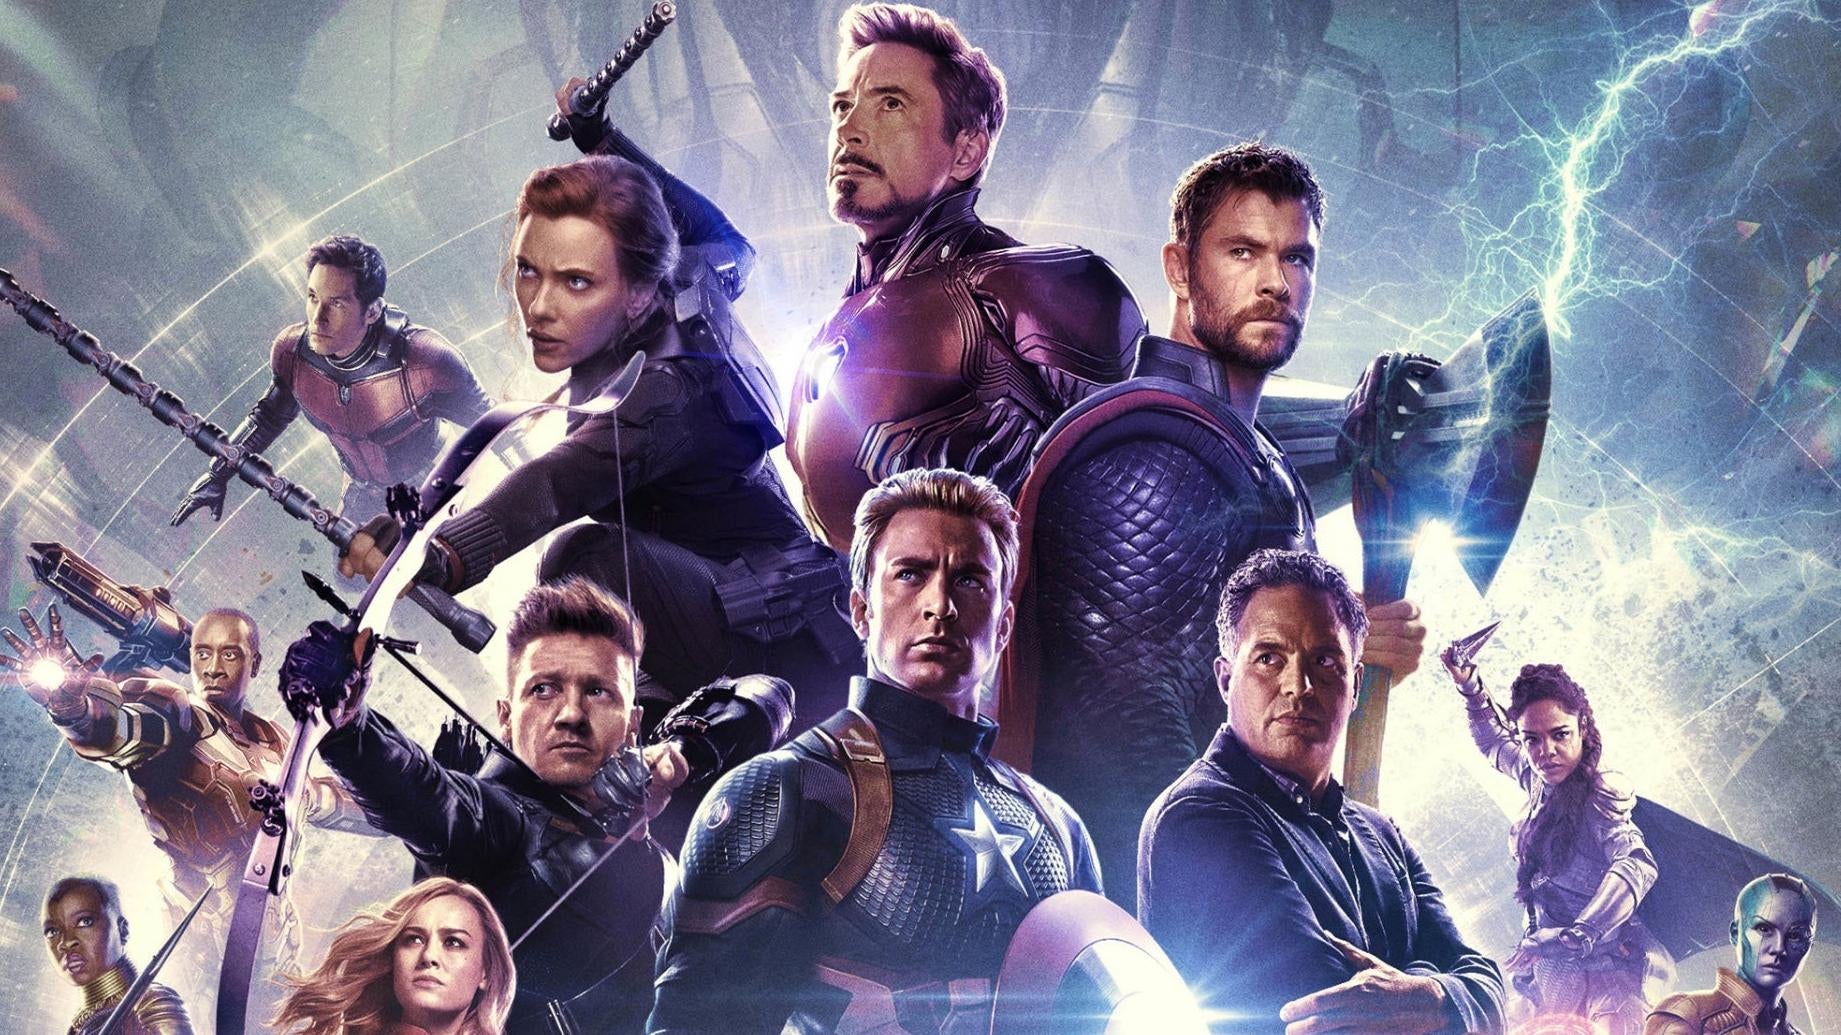 Poster for Avengers Endgame. (Image: Marvel Studios)